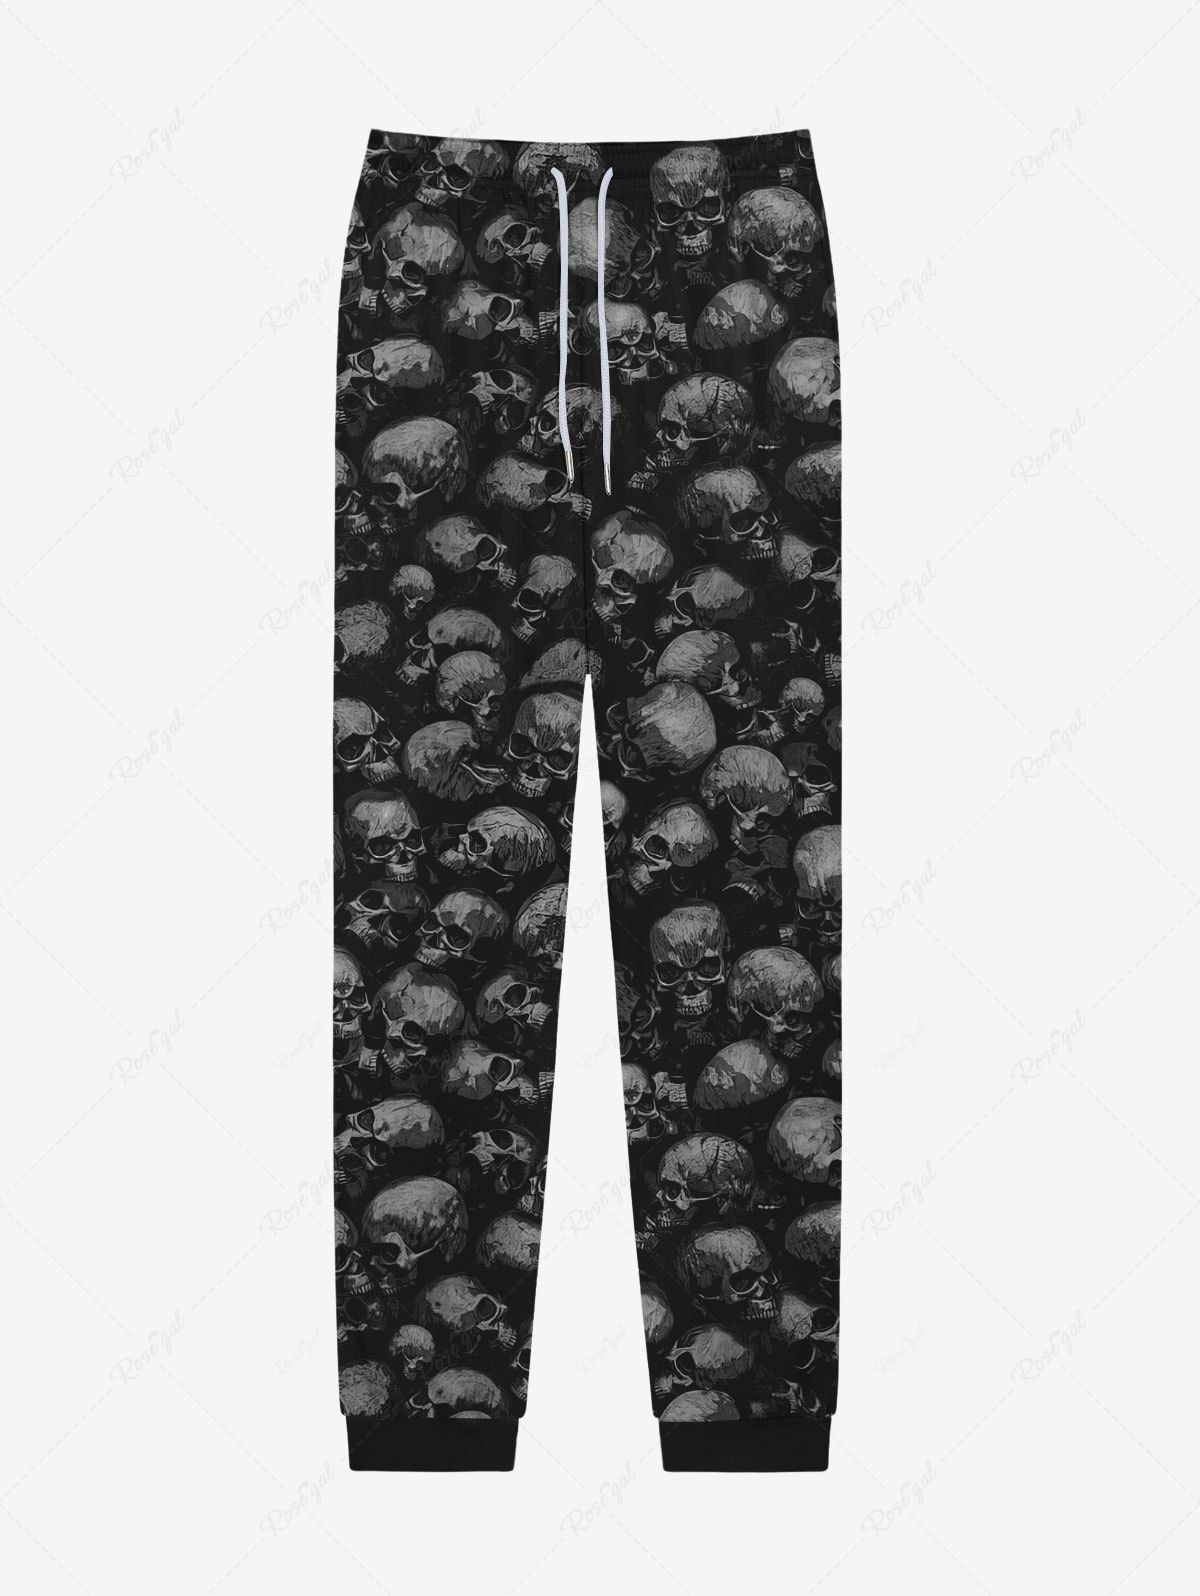 Unique Gothic 3D Distressed Skulls Print Drawstring Pockets Sweatpants For Men  